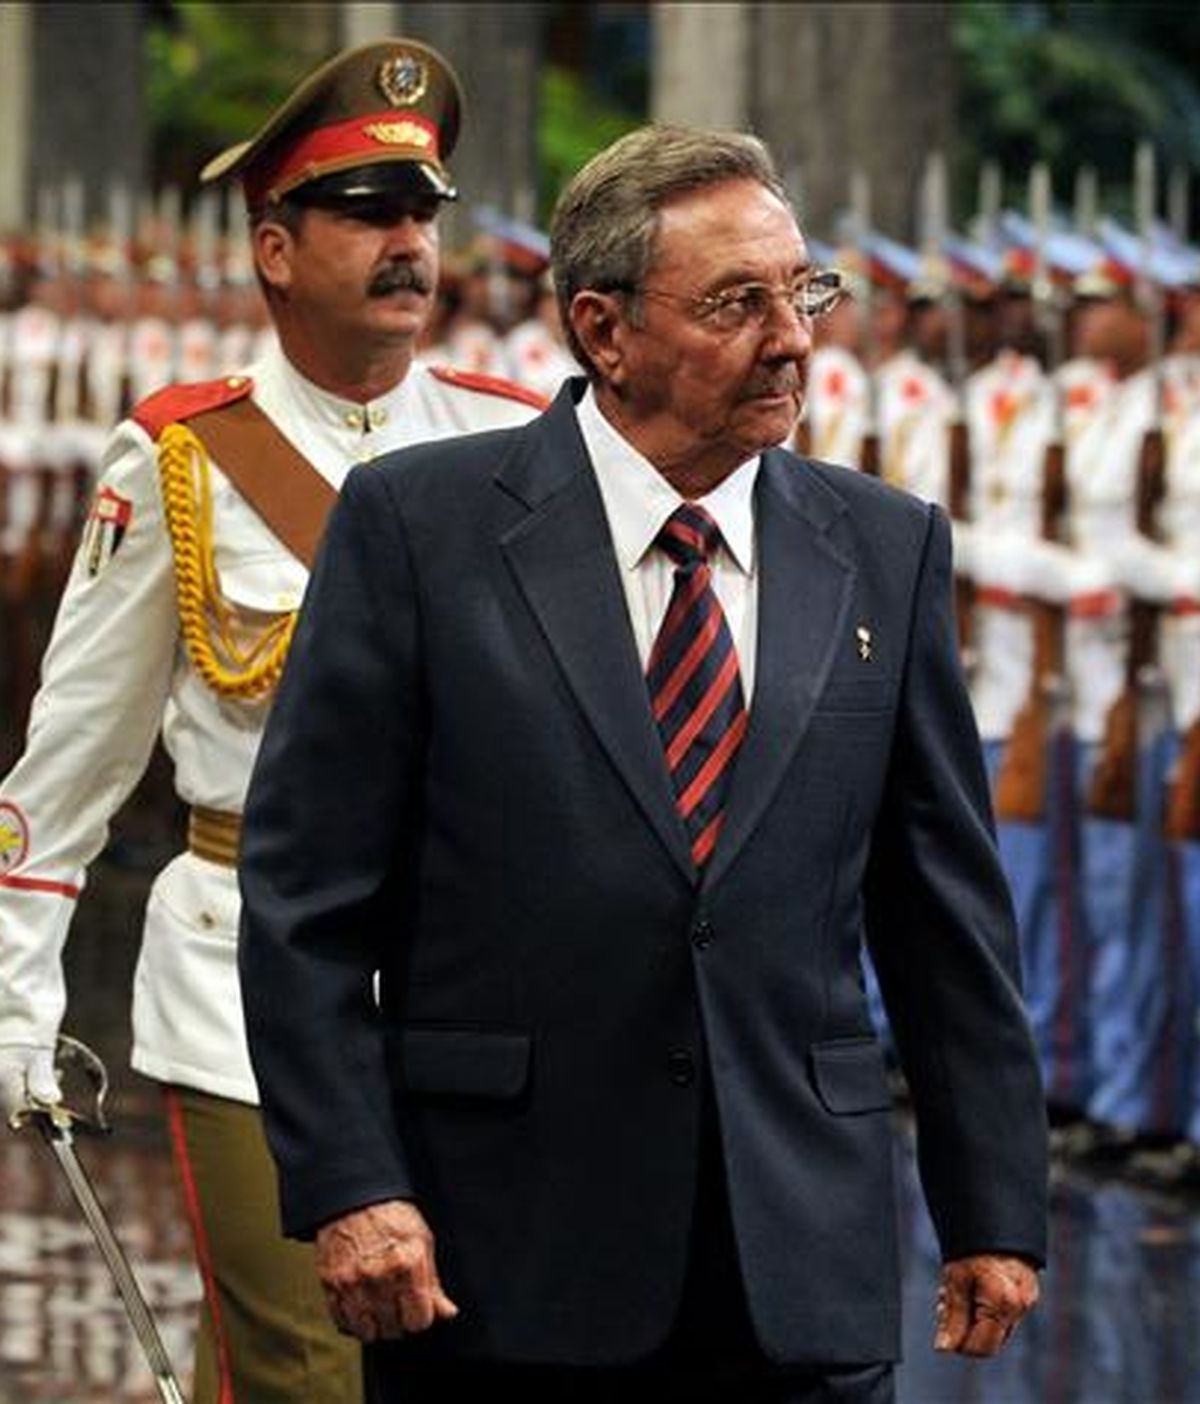 "Viene Raúl Castro" a la reunión presidencial de la Alternativa Bolivariana para las Américas (ALBA), dijo Chávez durante la segunda emisión de su nuevo programa nocturno de radio y televisión "Aló Presidente teórico". EFE/Archivo